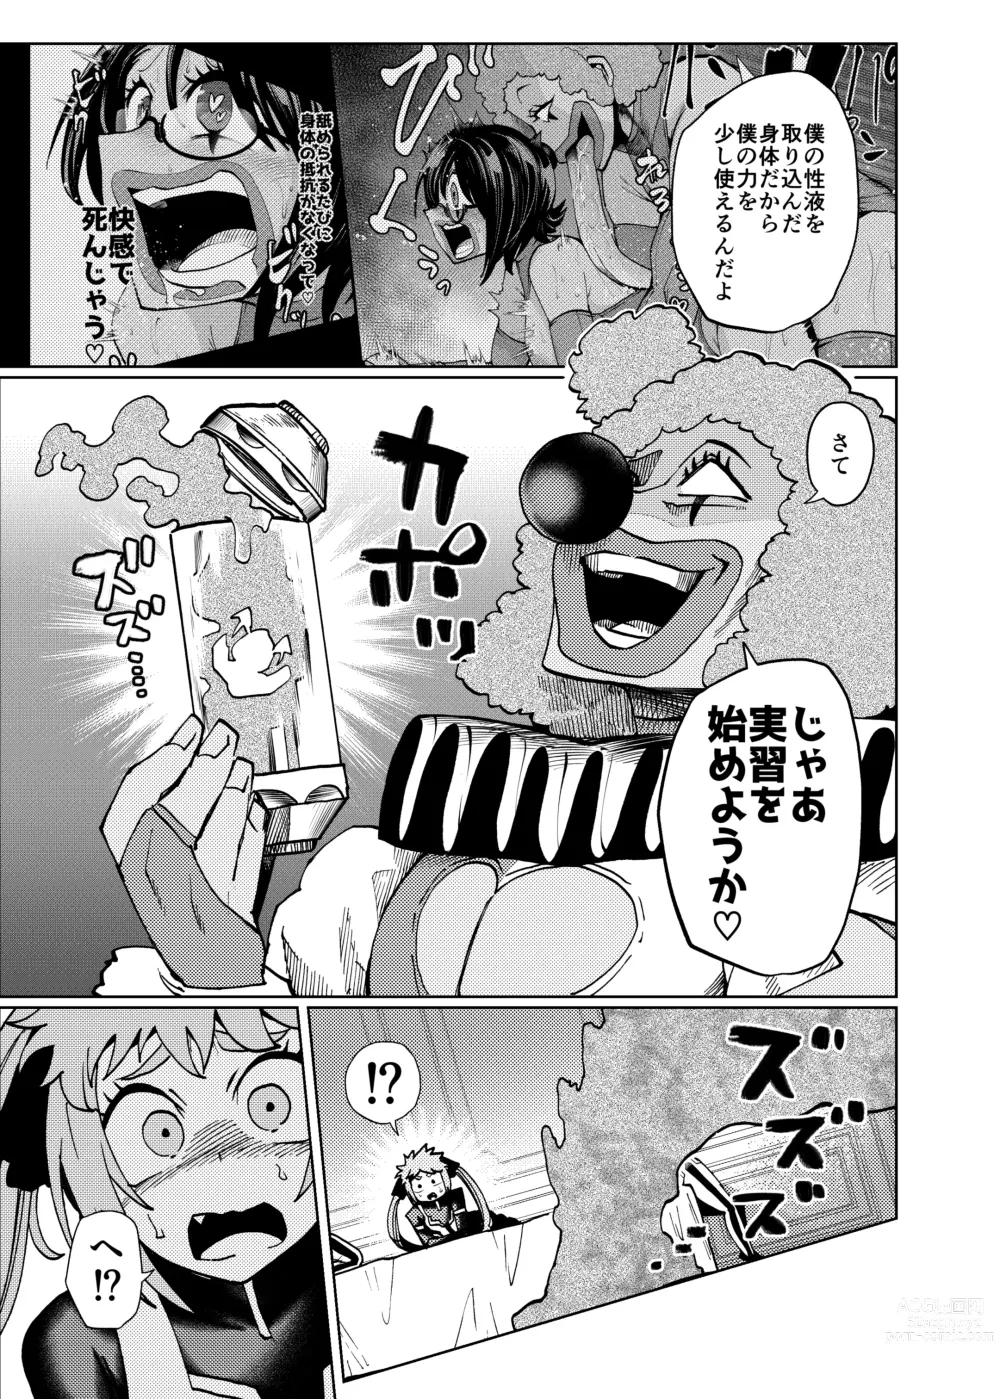 Page 15 of doujinshi Hiroin Gakka wa Aku Ochi ga Hisshuu Kamokudesu 2 Jikanme